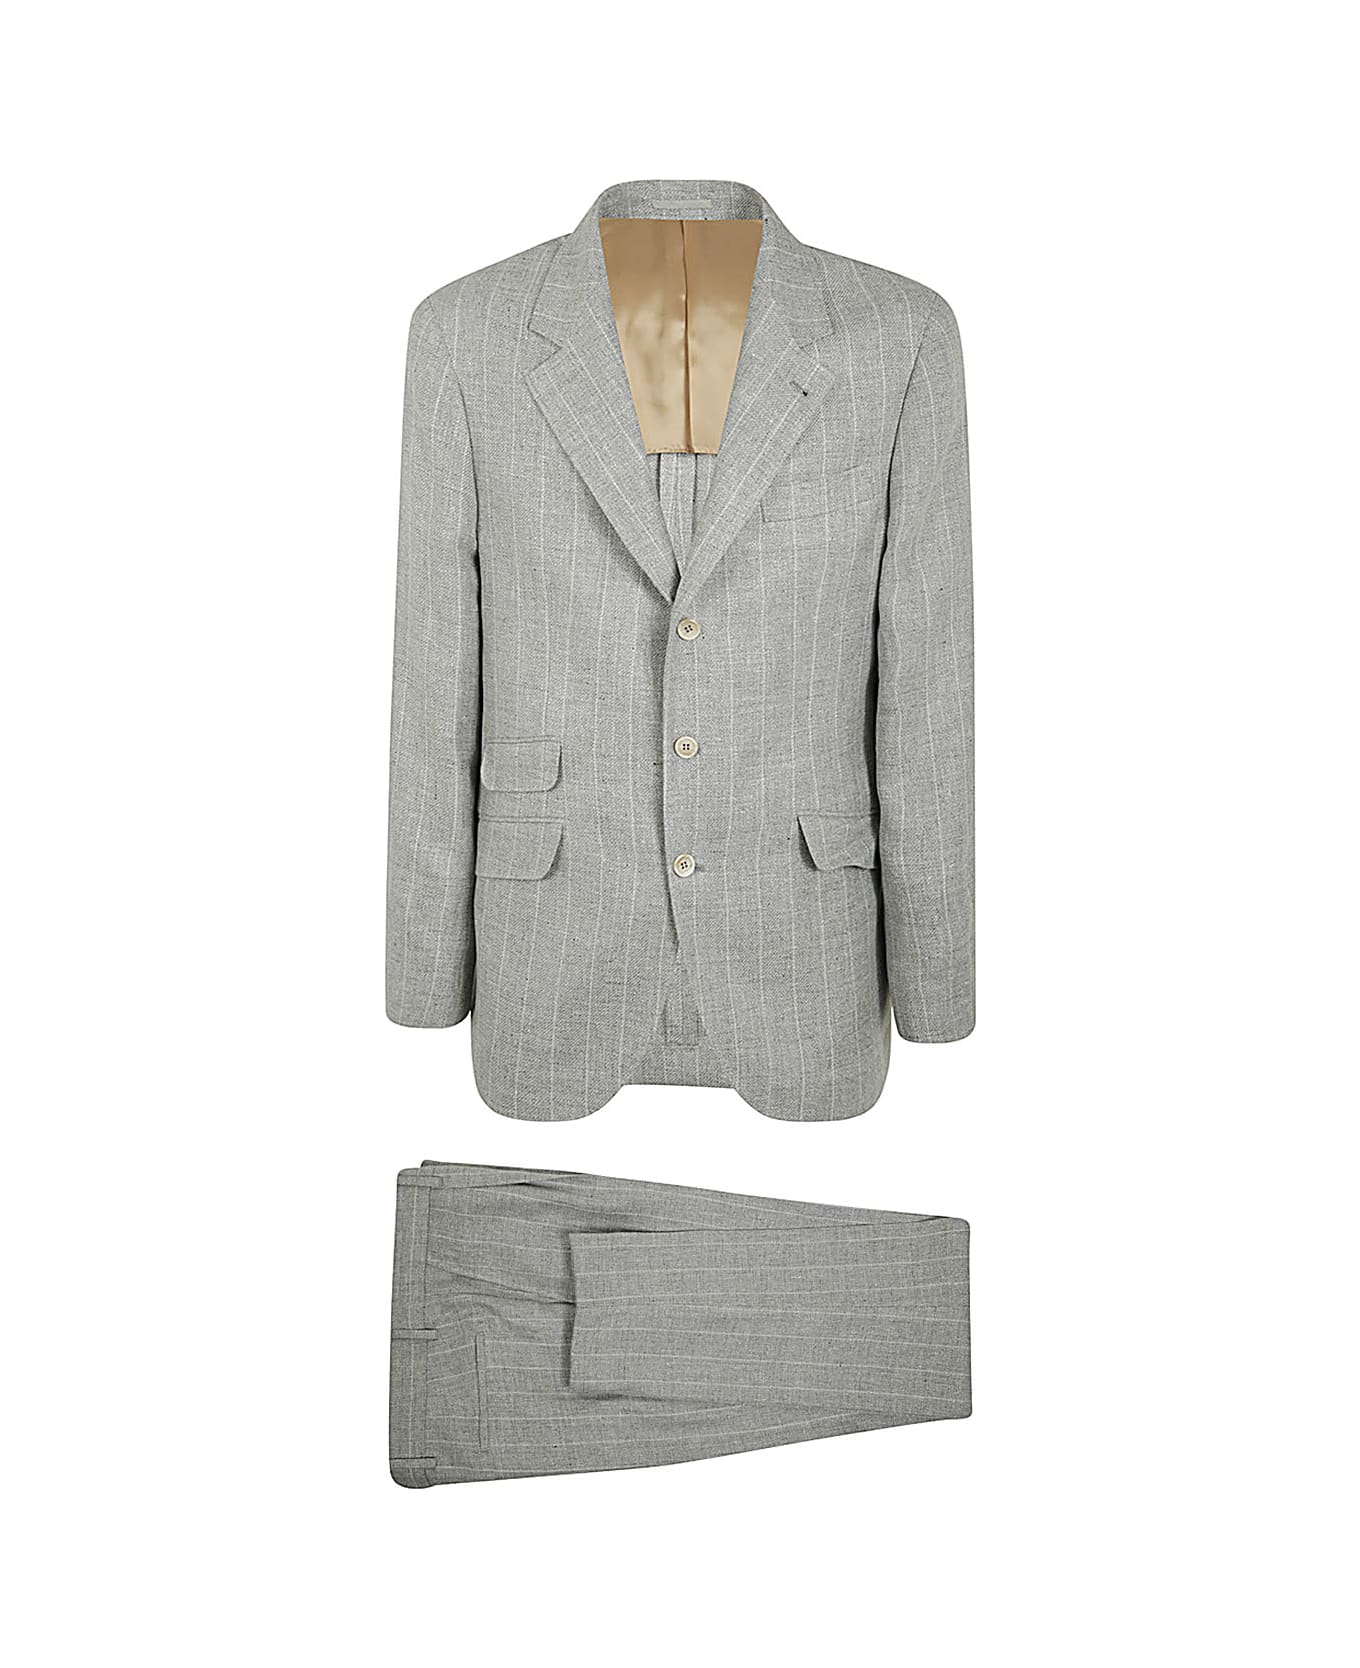 Brunello Cucinelli Leisure Suit - Light Grey Panama